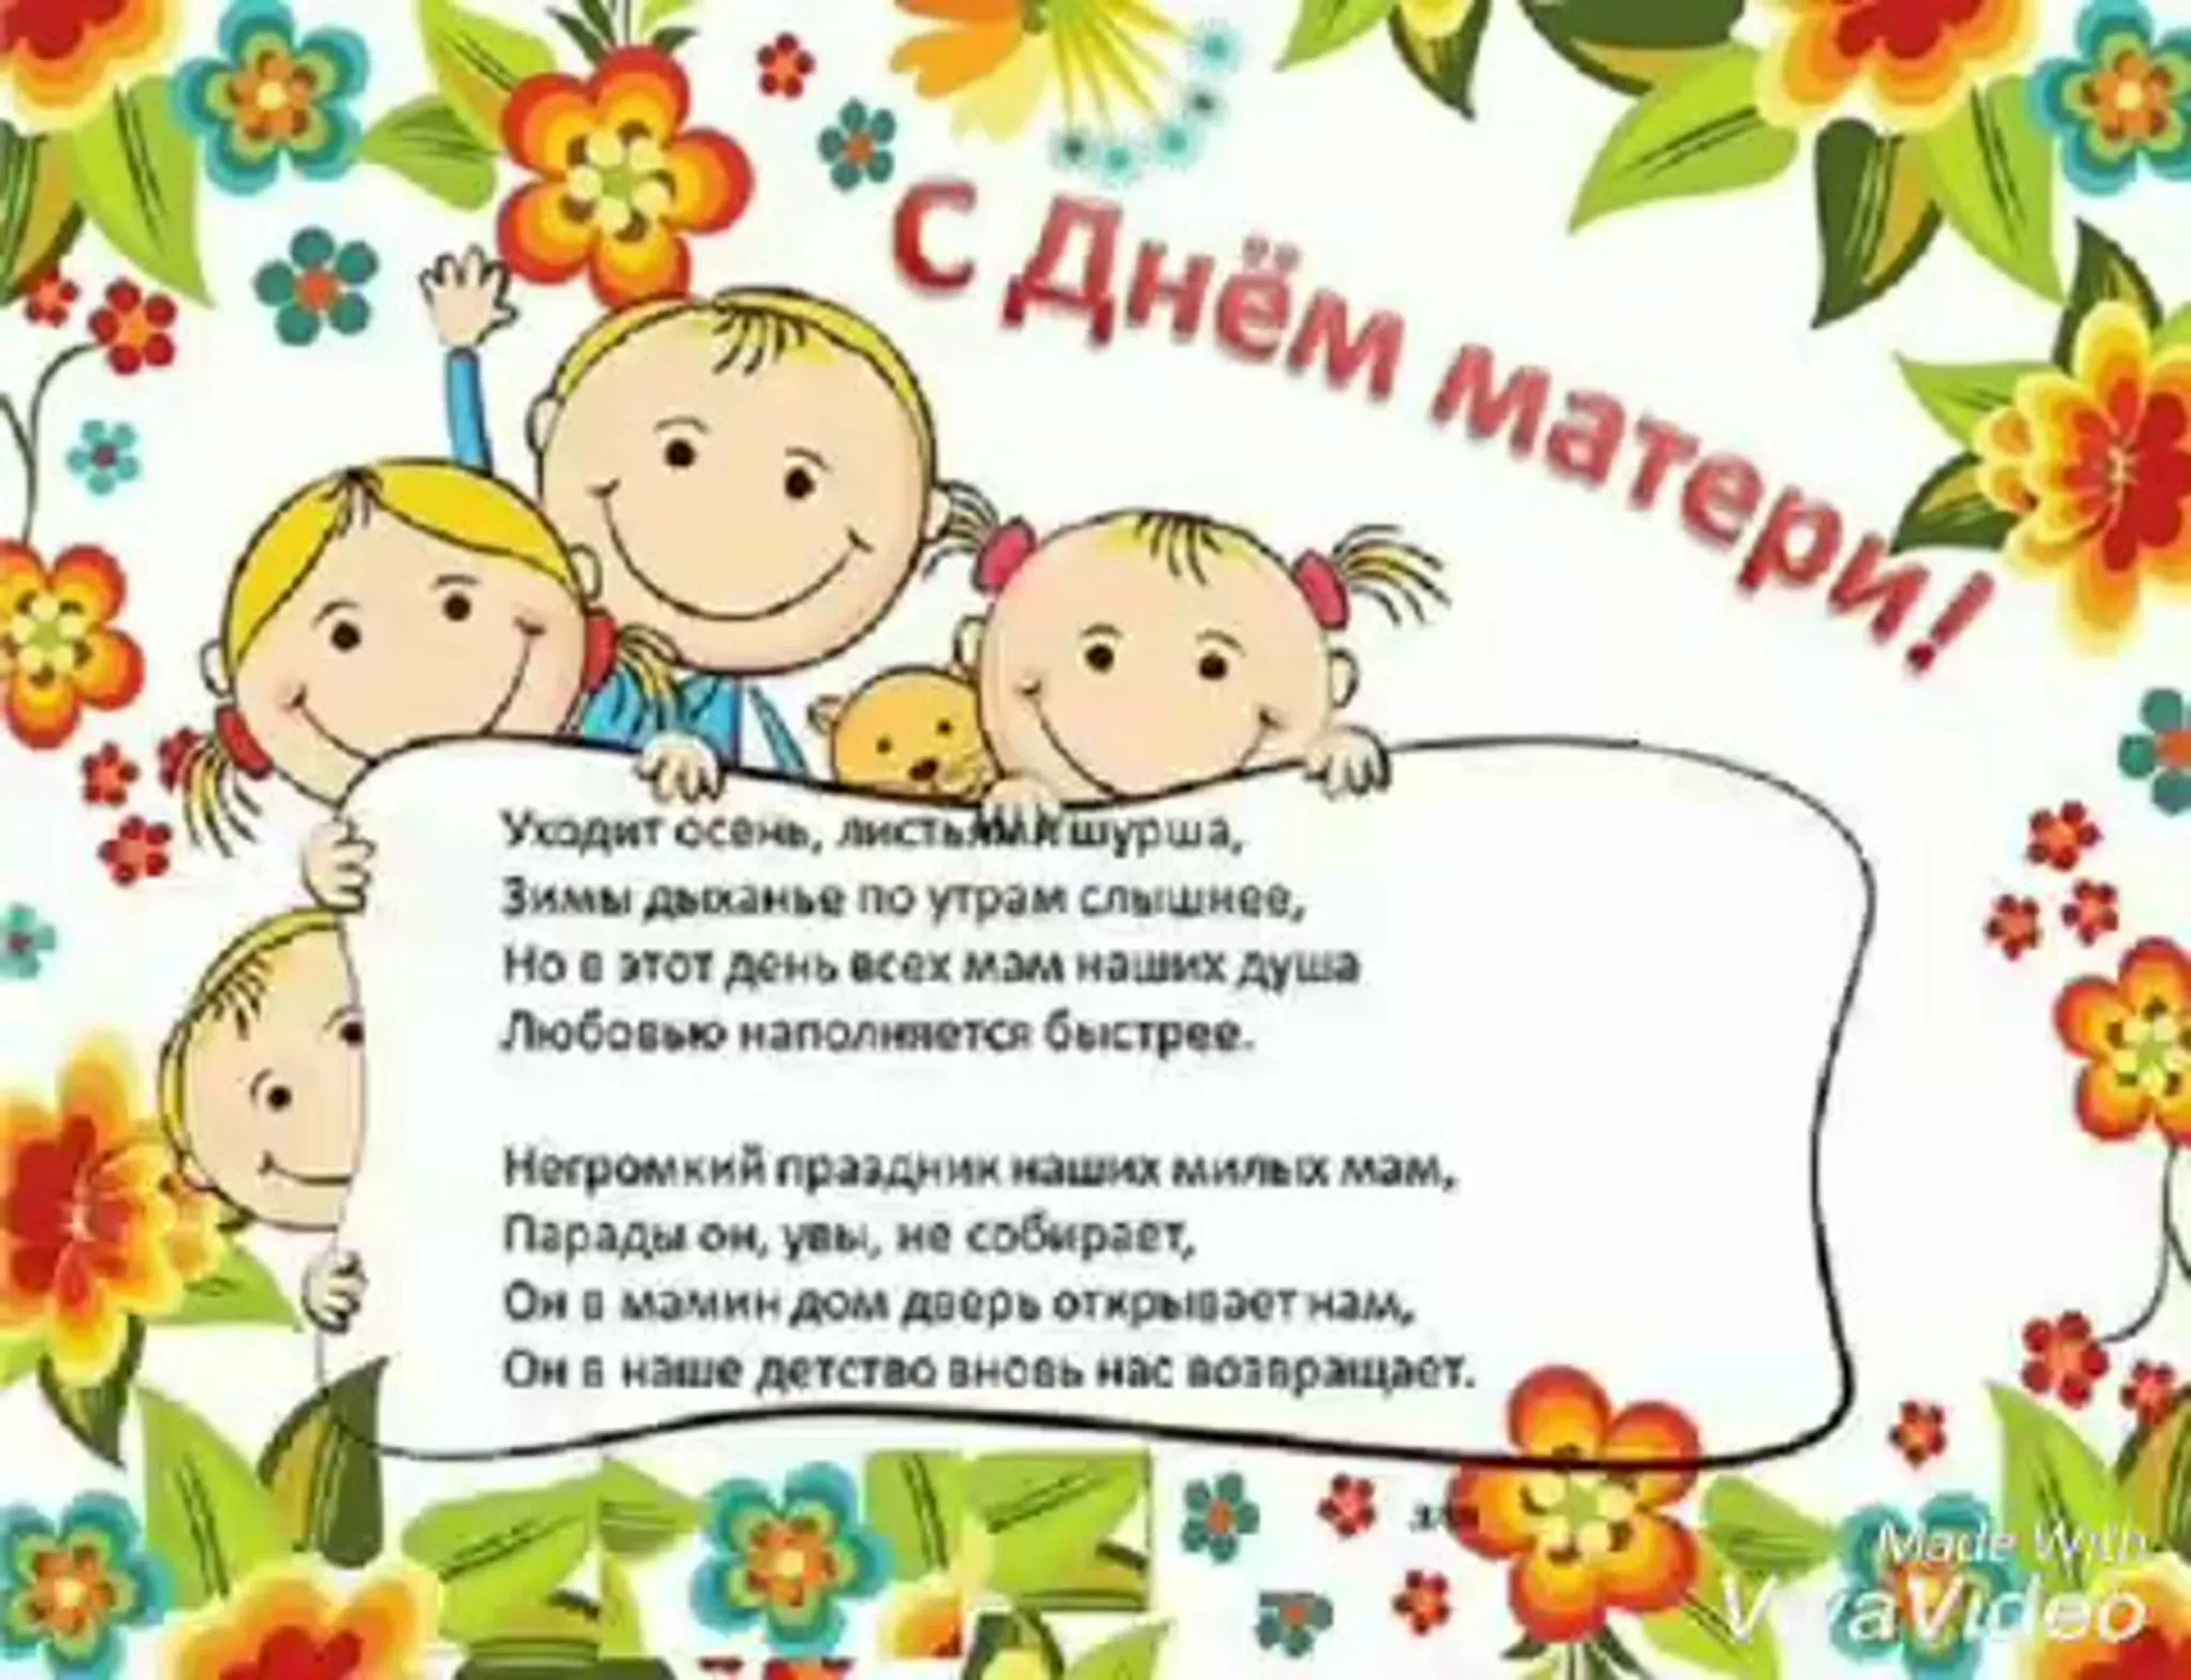 Фото Приглашение на День матери в детском саду в стихах и прозе #23